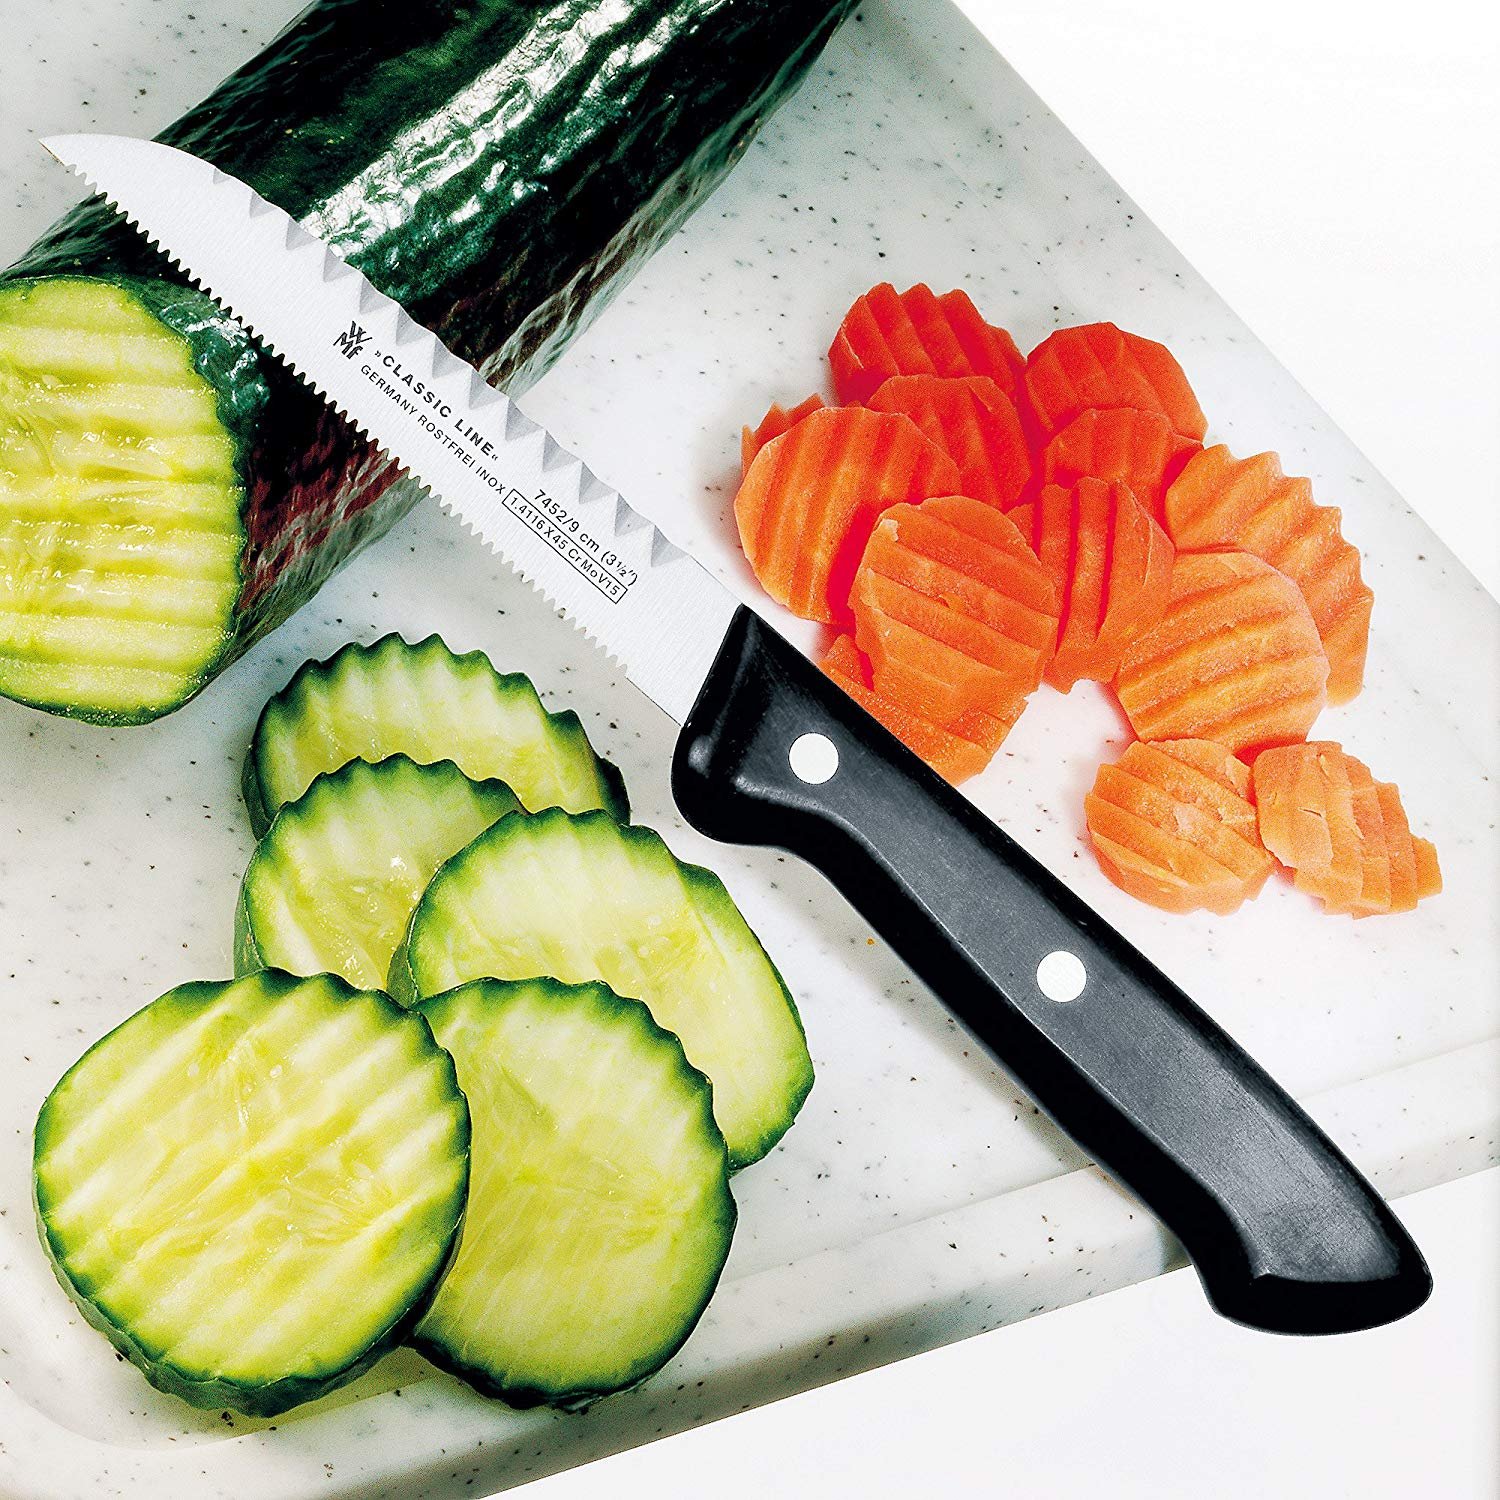 Нож режет овощи. Нож для фруктов Steel 9см. Нож для фруктов Steel 9см (kod:aks504 ). Овощной нож. Фигурная нарезка овощей и фруктов.